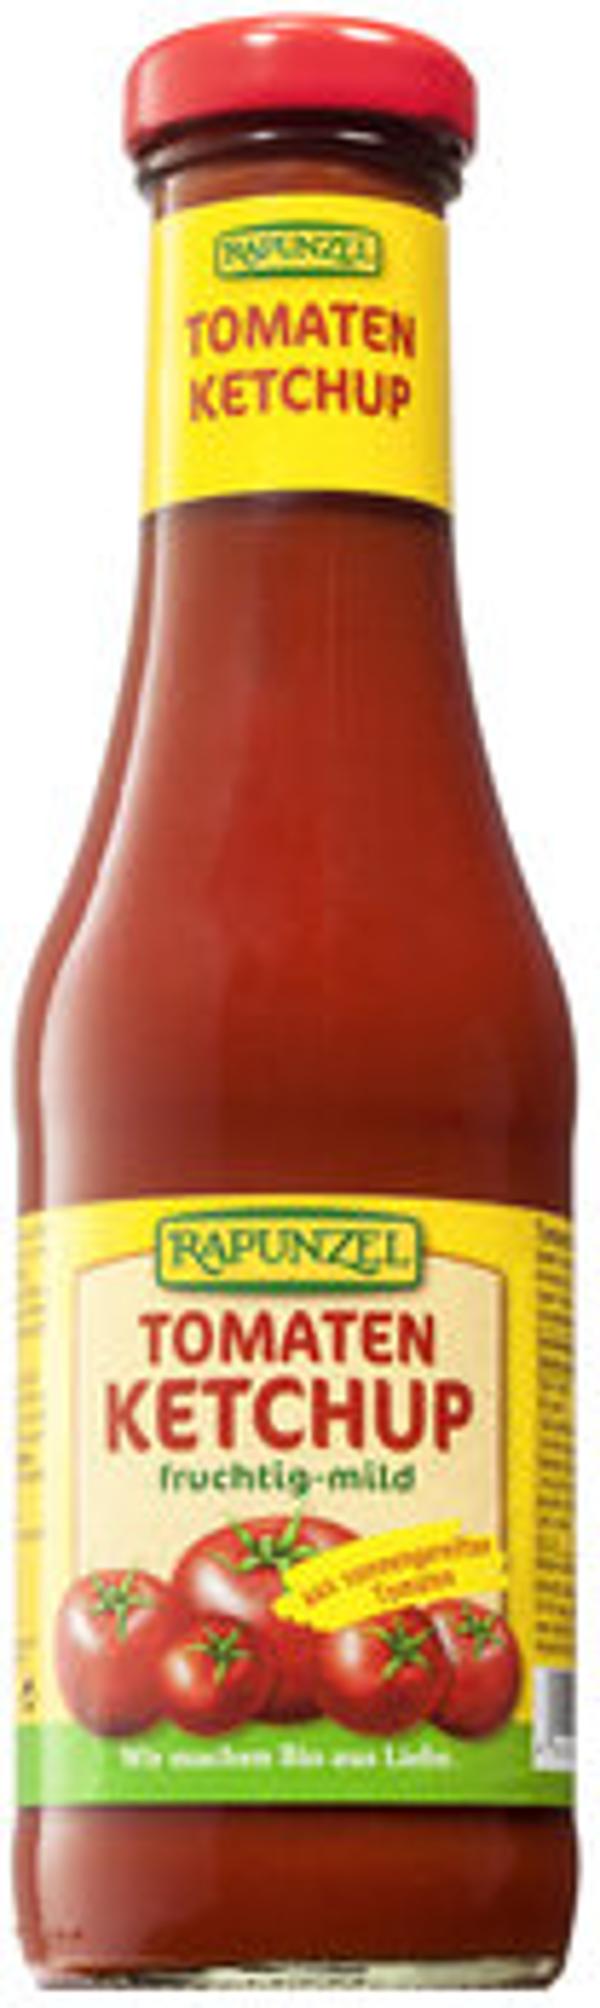 Produktfoto zu Rapunzel Ketchup 450ml